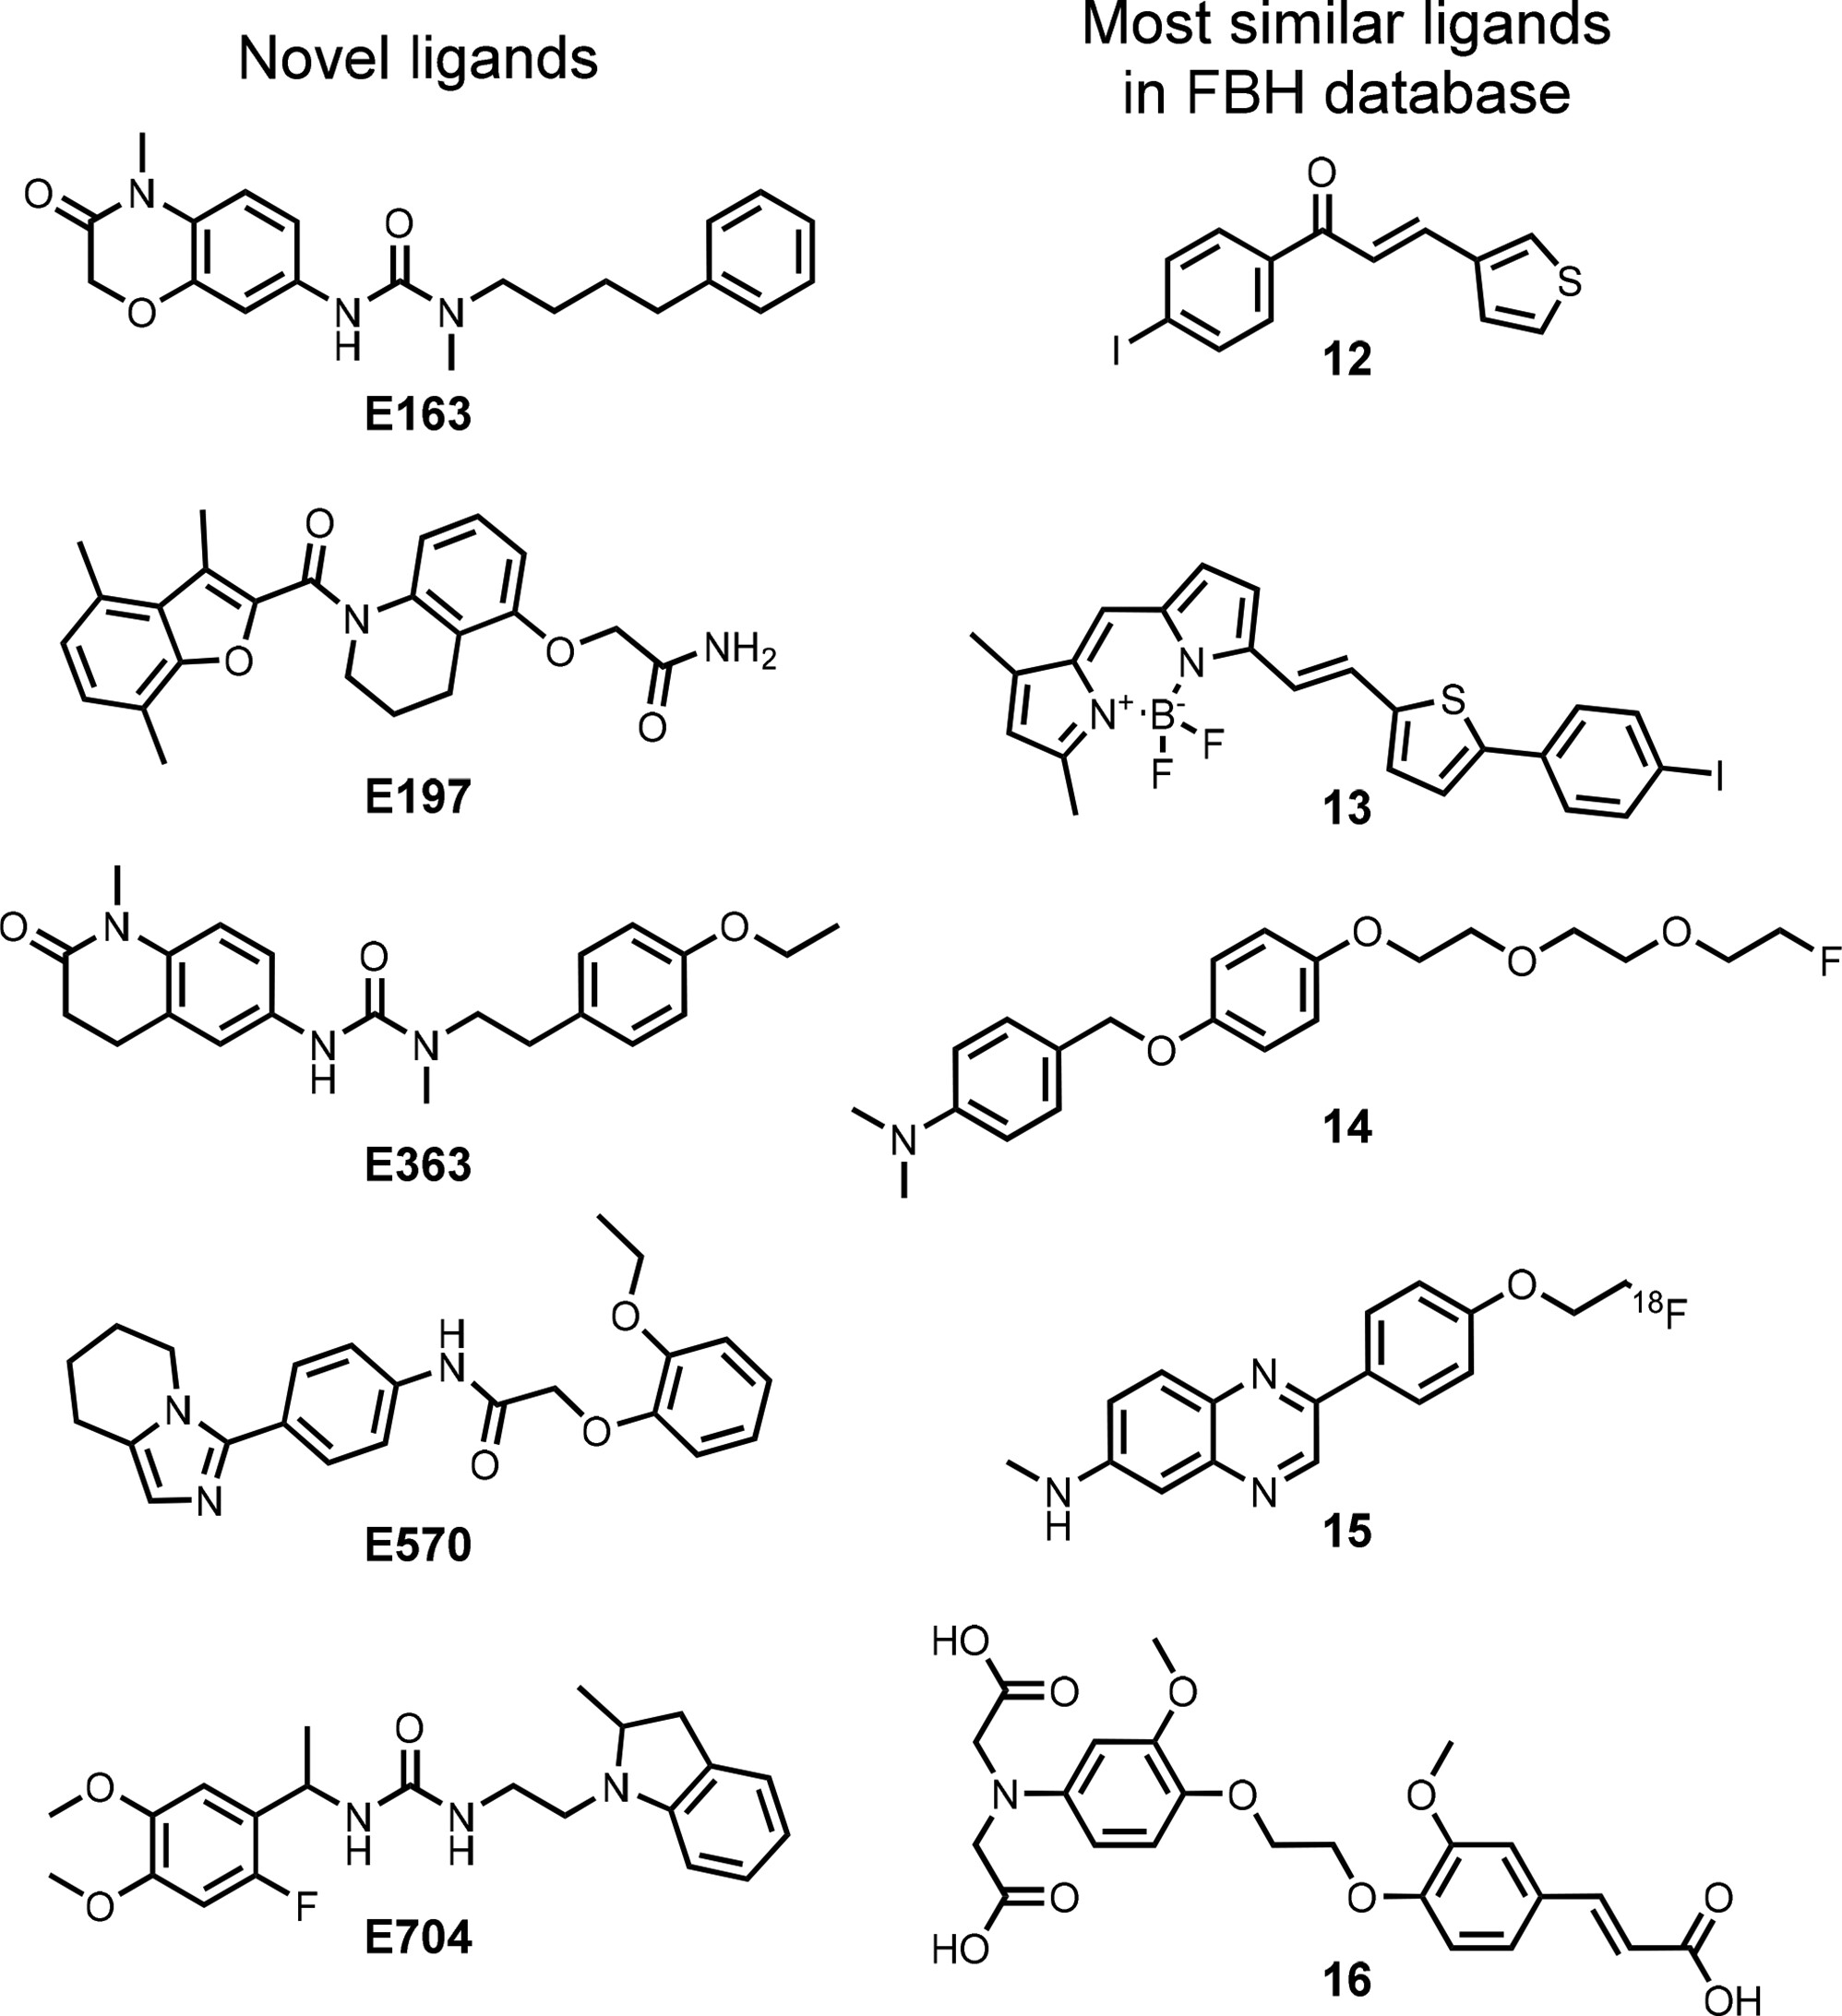 新型配体的化学结构与FBH数据库中相应配体的化学结构进行比较